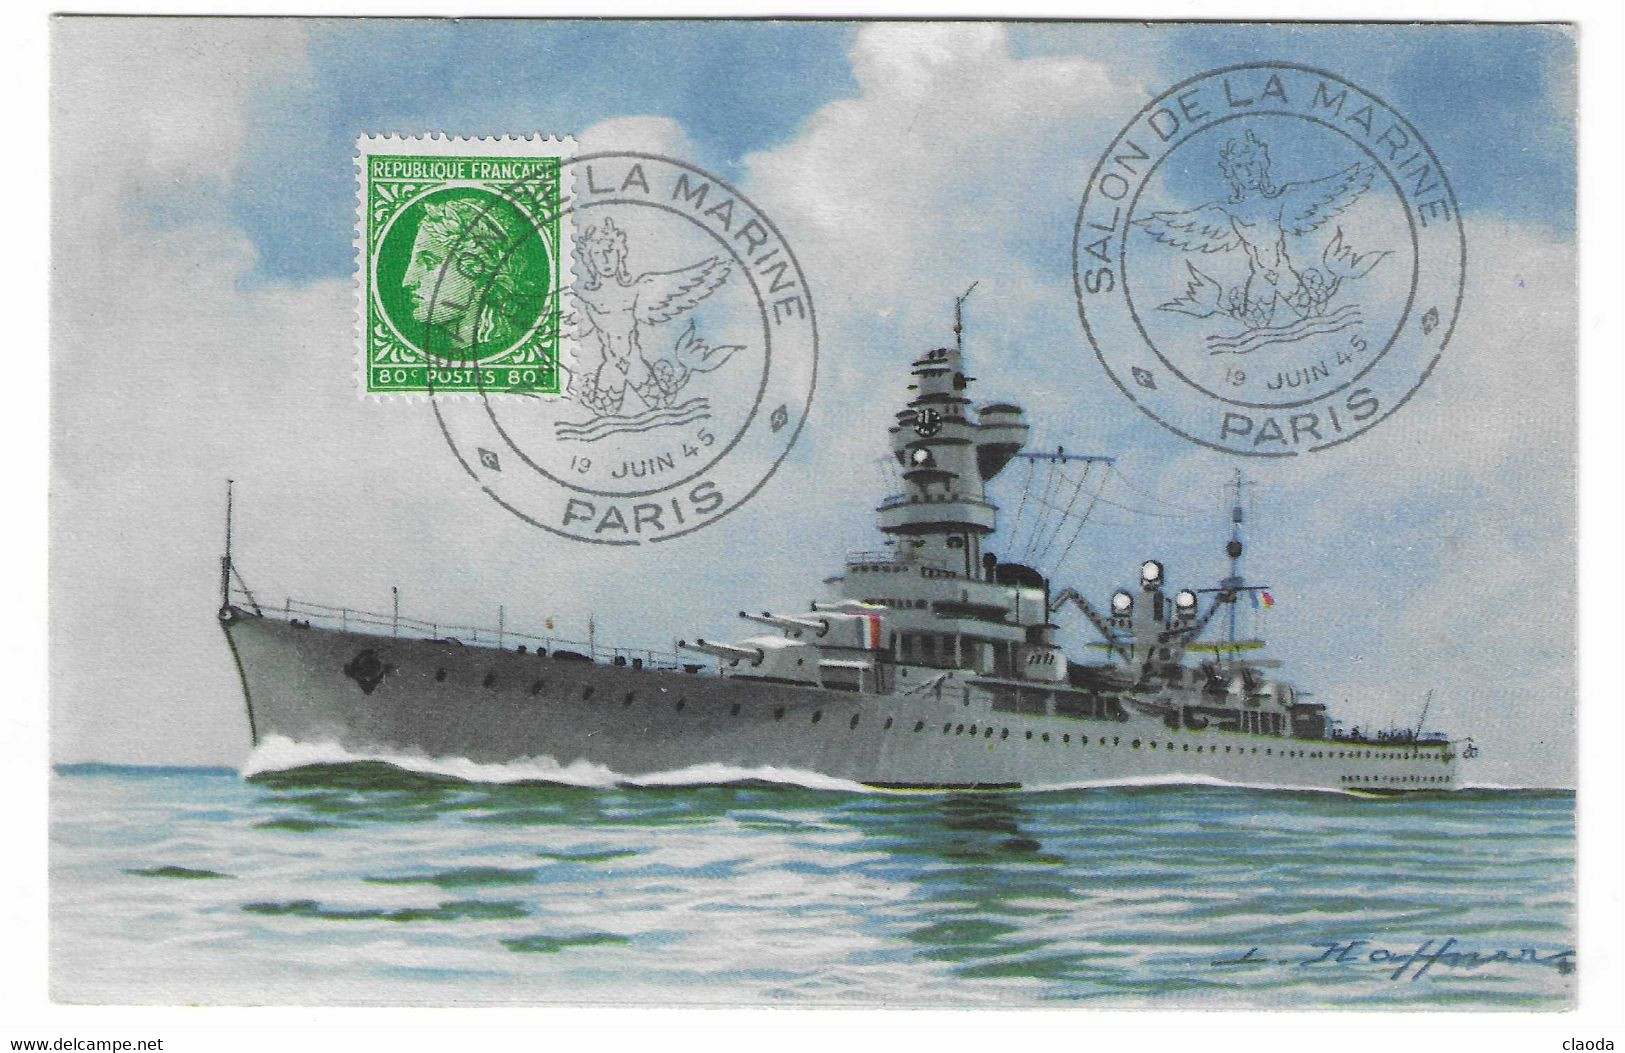 98 SM - SALON DE LA MARINE 1945 -Croiseur ALGÉRIE - Illustrateur L. HAFFNER -  Cachet à Date 19  Juin 1945 - Seepost